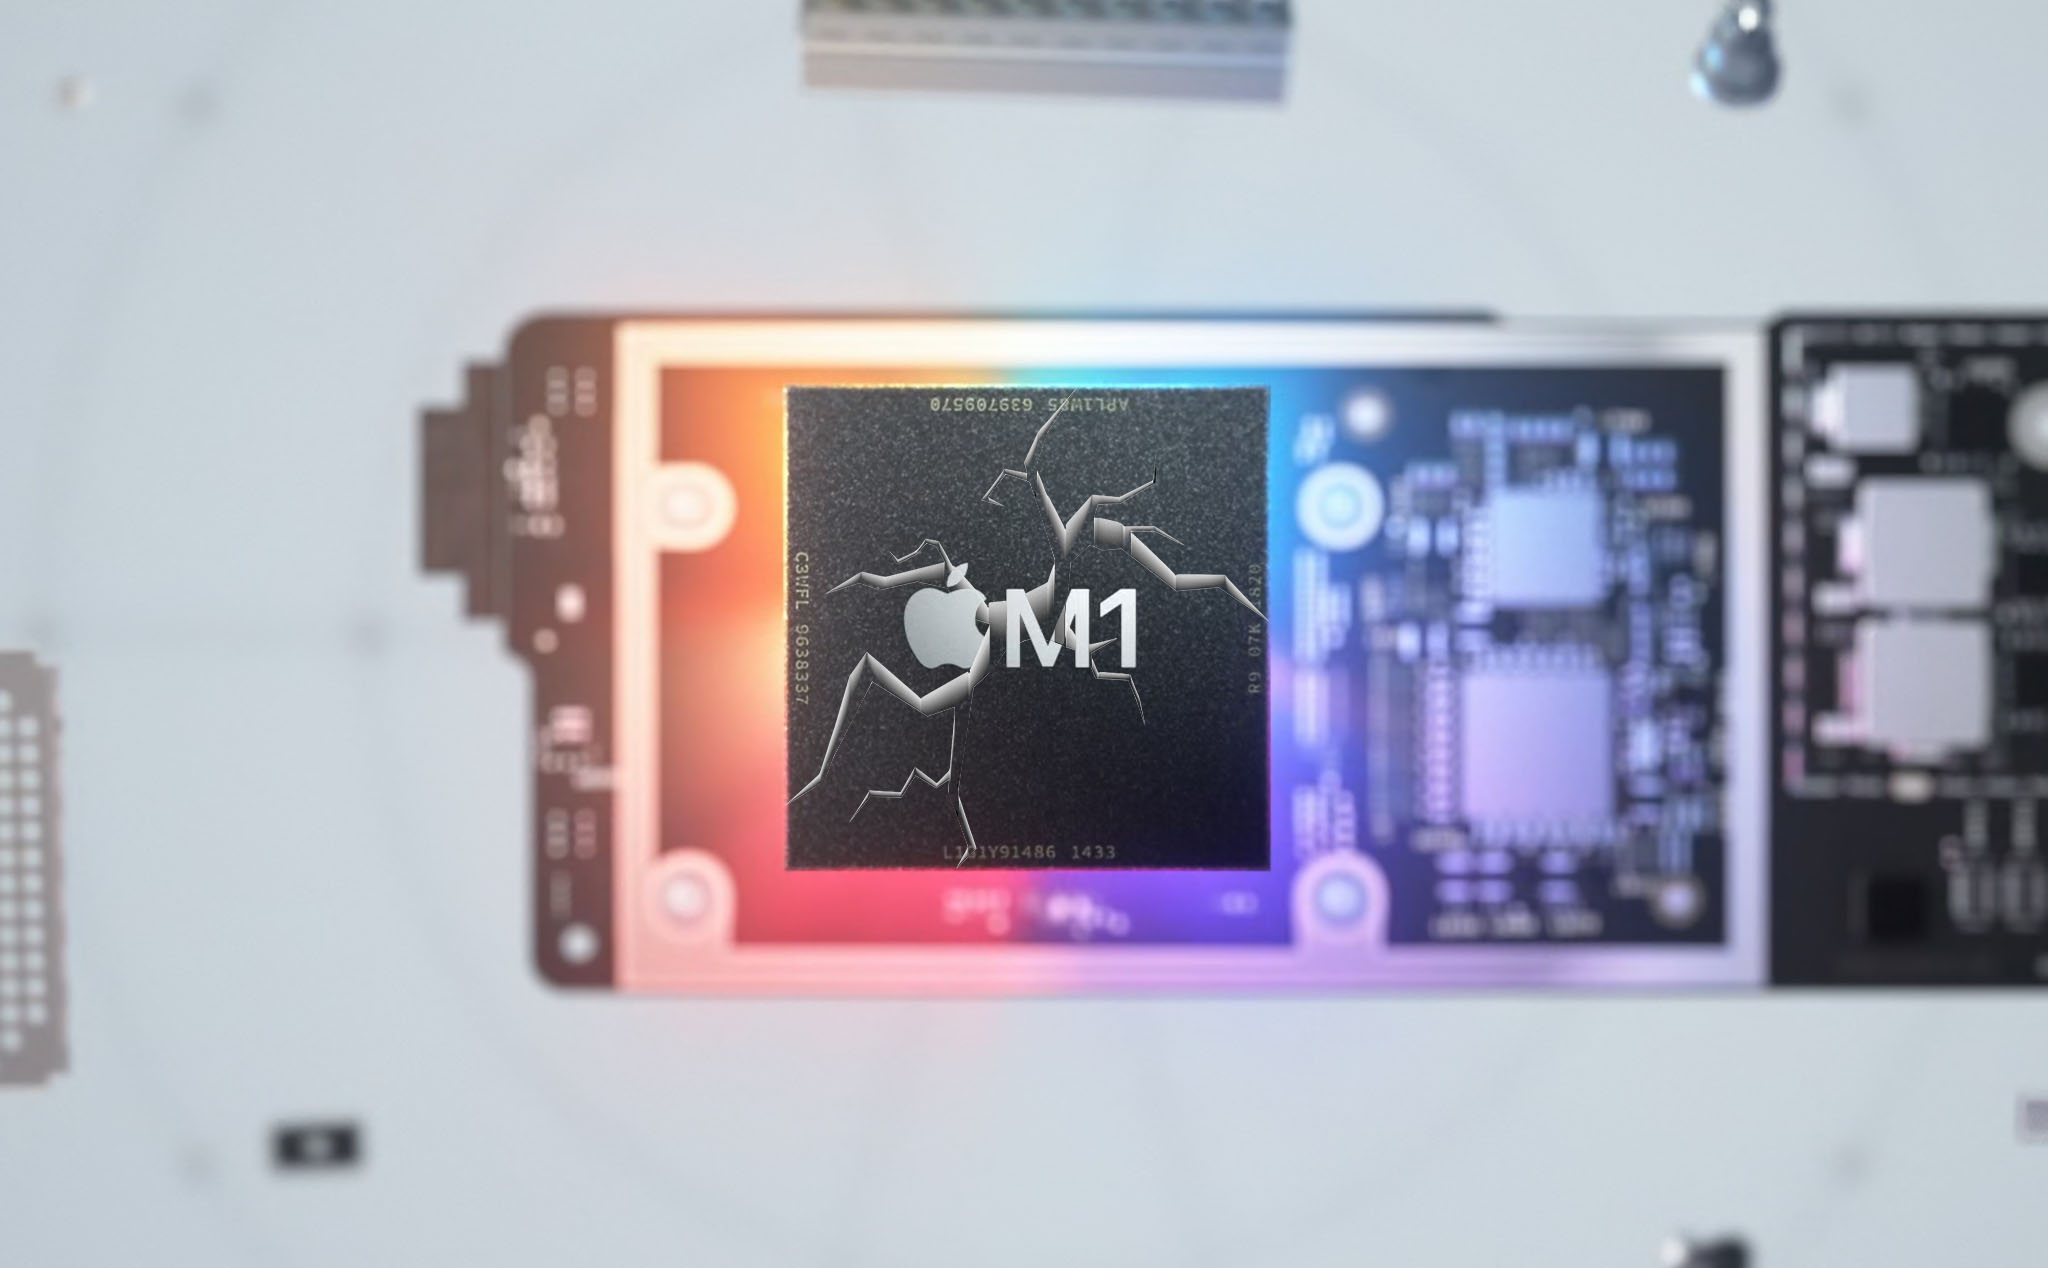 Phát hiện lỗ hổng “không thể vá” trong chip Apple M1